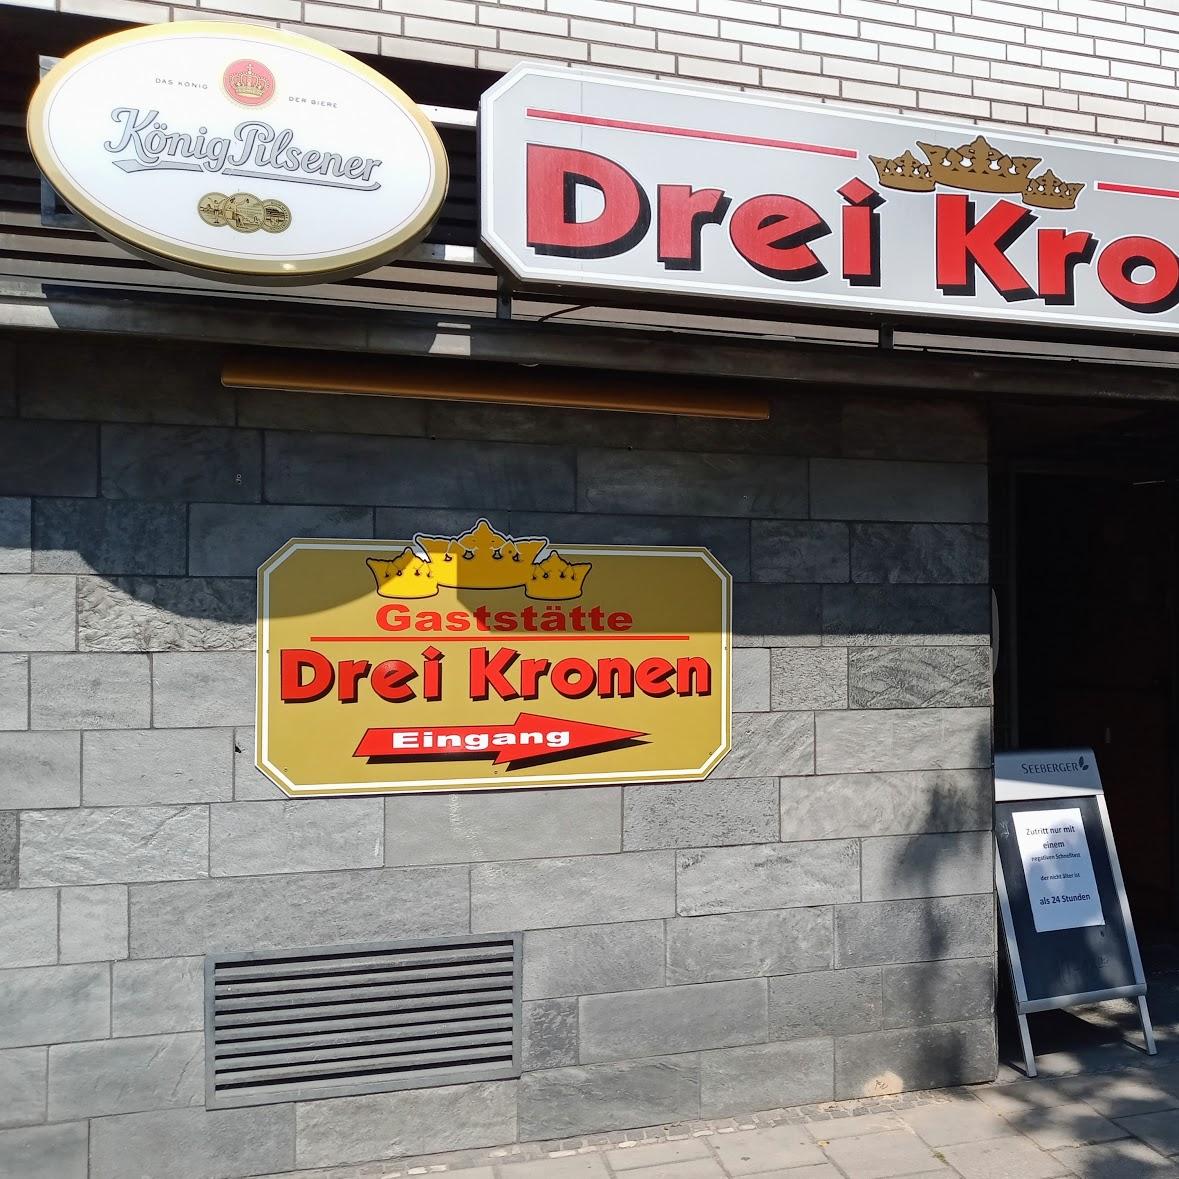 Restaurant "Drei Kronen" in Bremerhaven